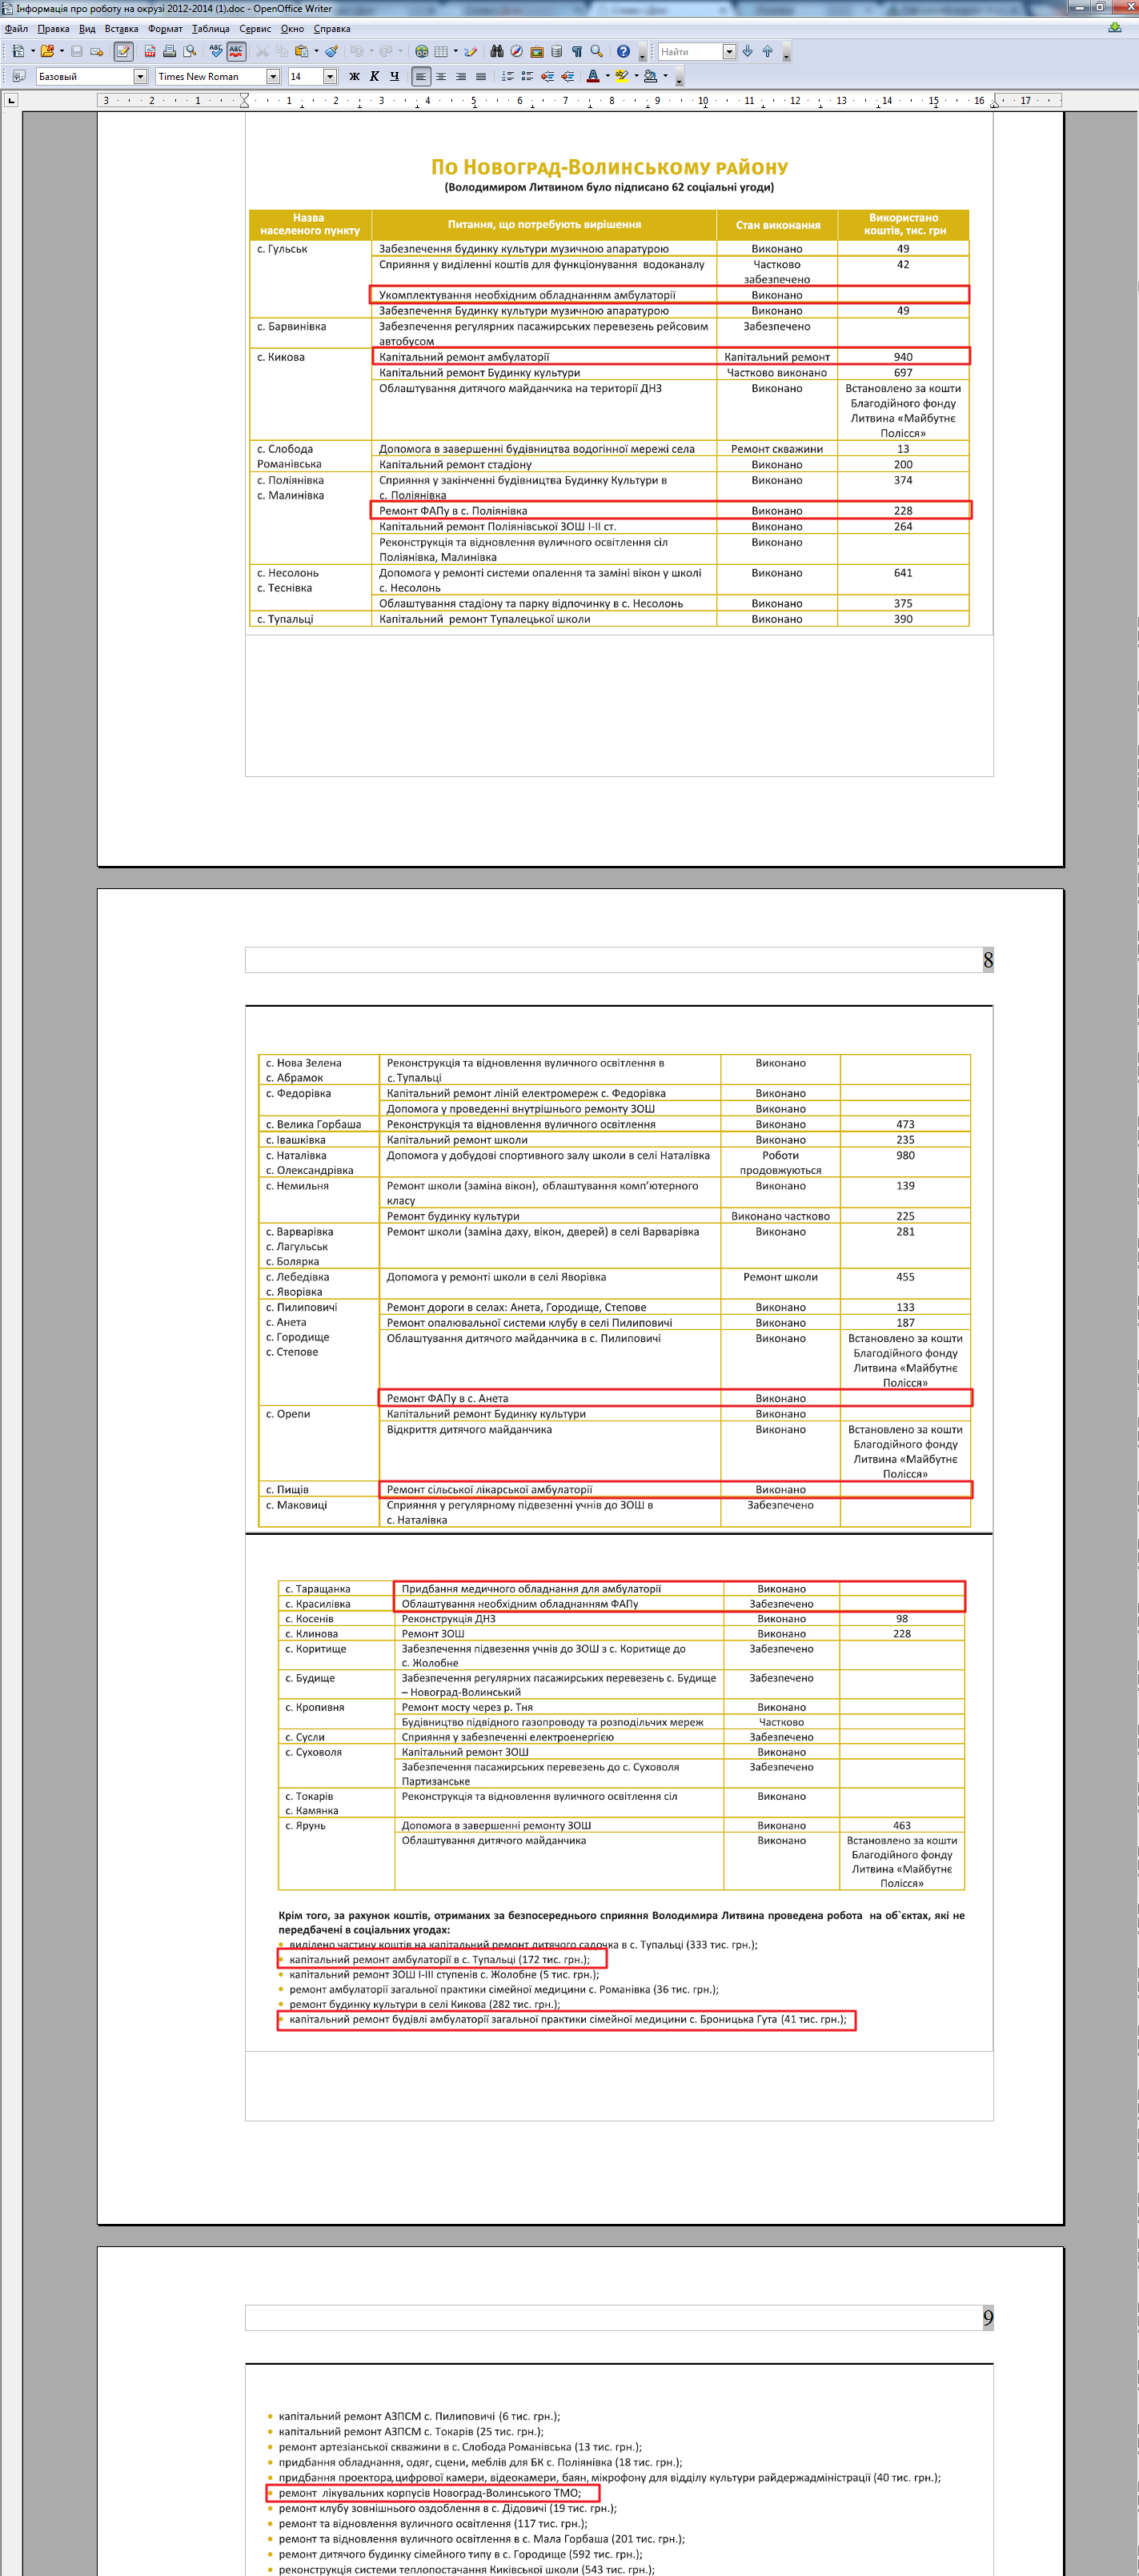 Отчет о работе на округе за 2012-2014 гг. В.М. Литвина